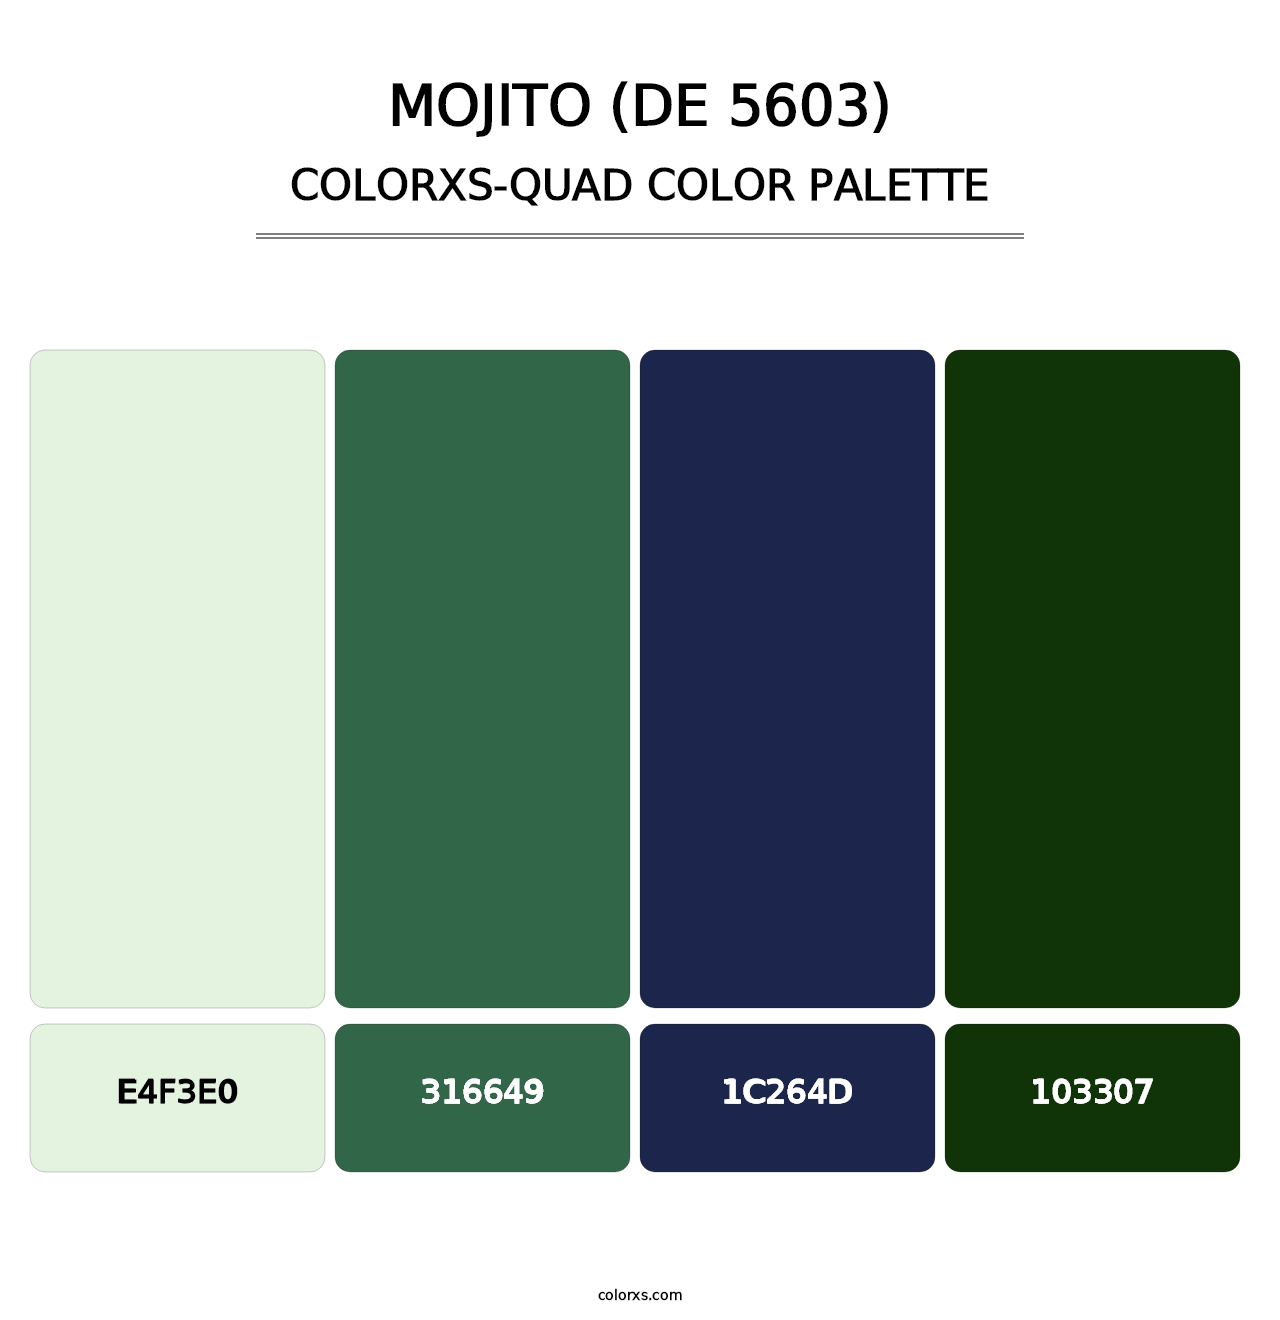 Mojito (DE 5603) - Colorxs Quad Palette